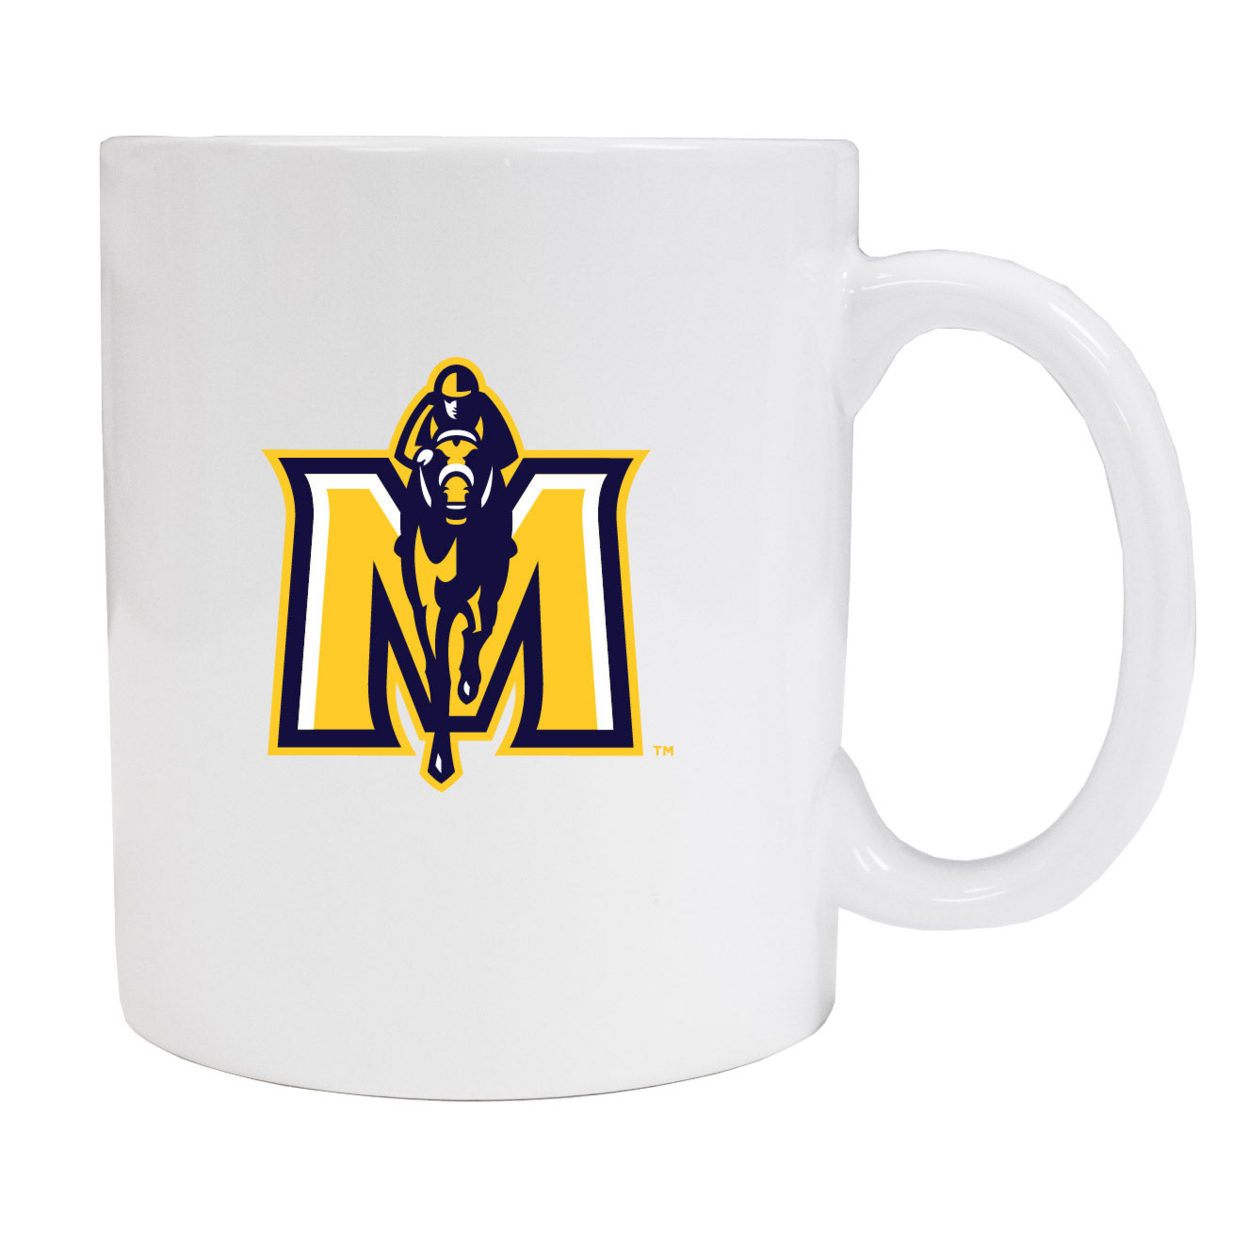 Murray State University White Ceramic Coffee Mug 2-Pack (White).